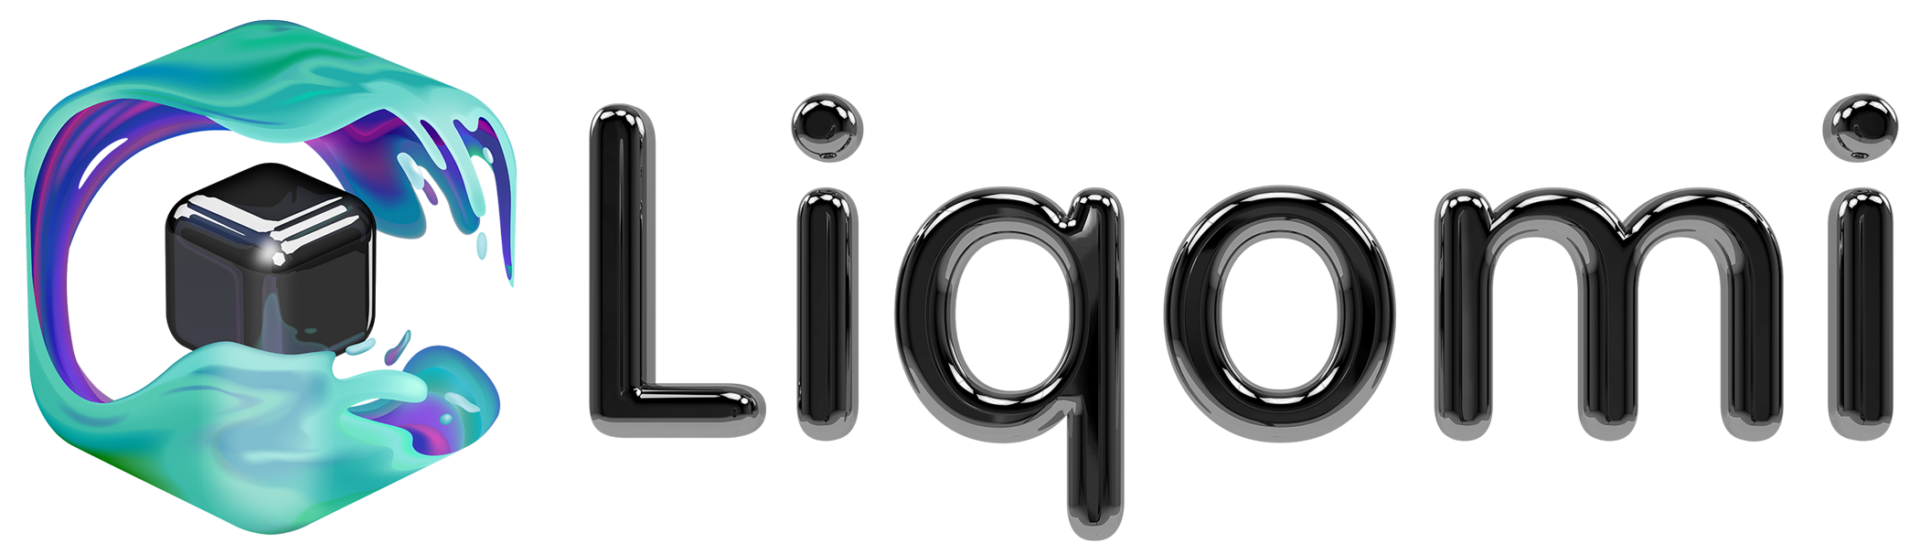 Het logo van Liqomi. Ontworpen in 3D en vervolgens uitgewerkt in vectoren.